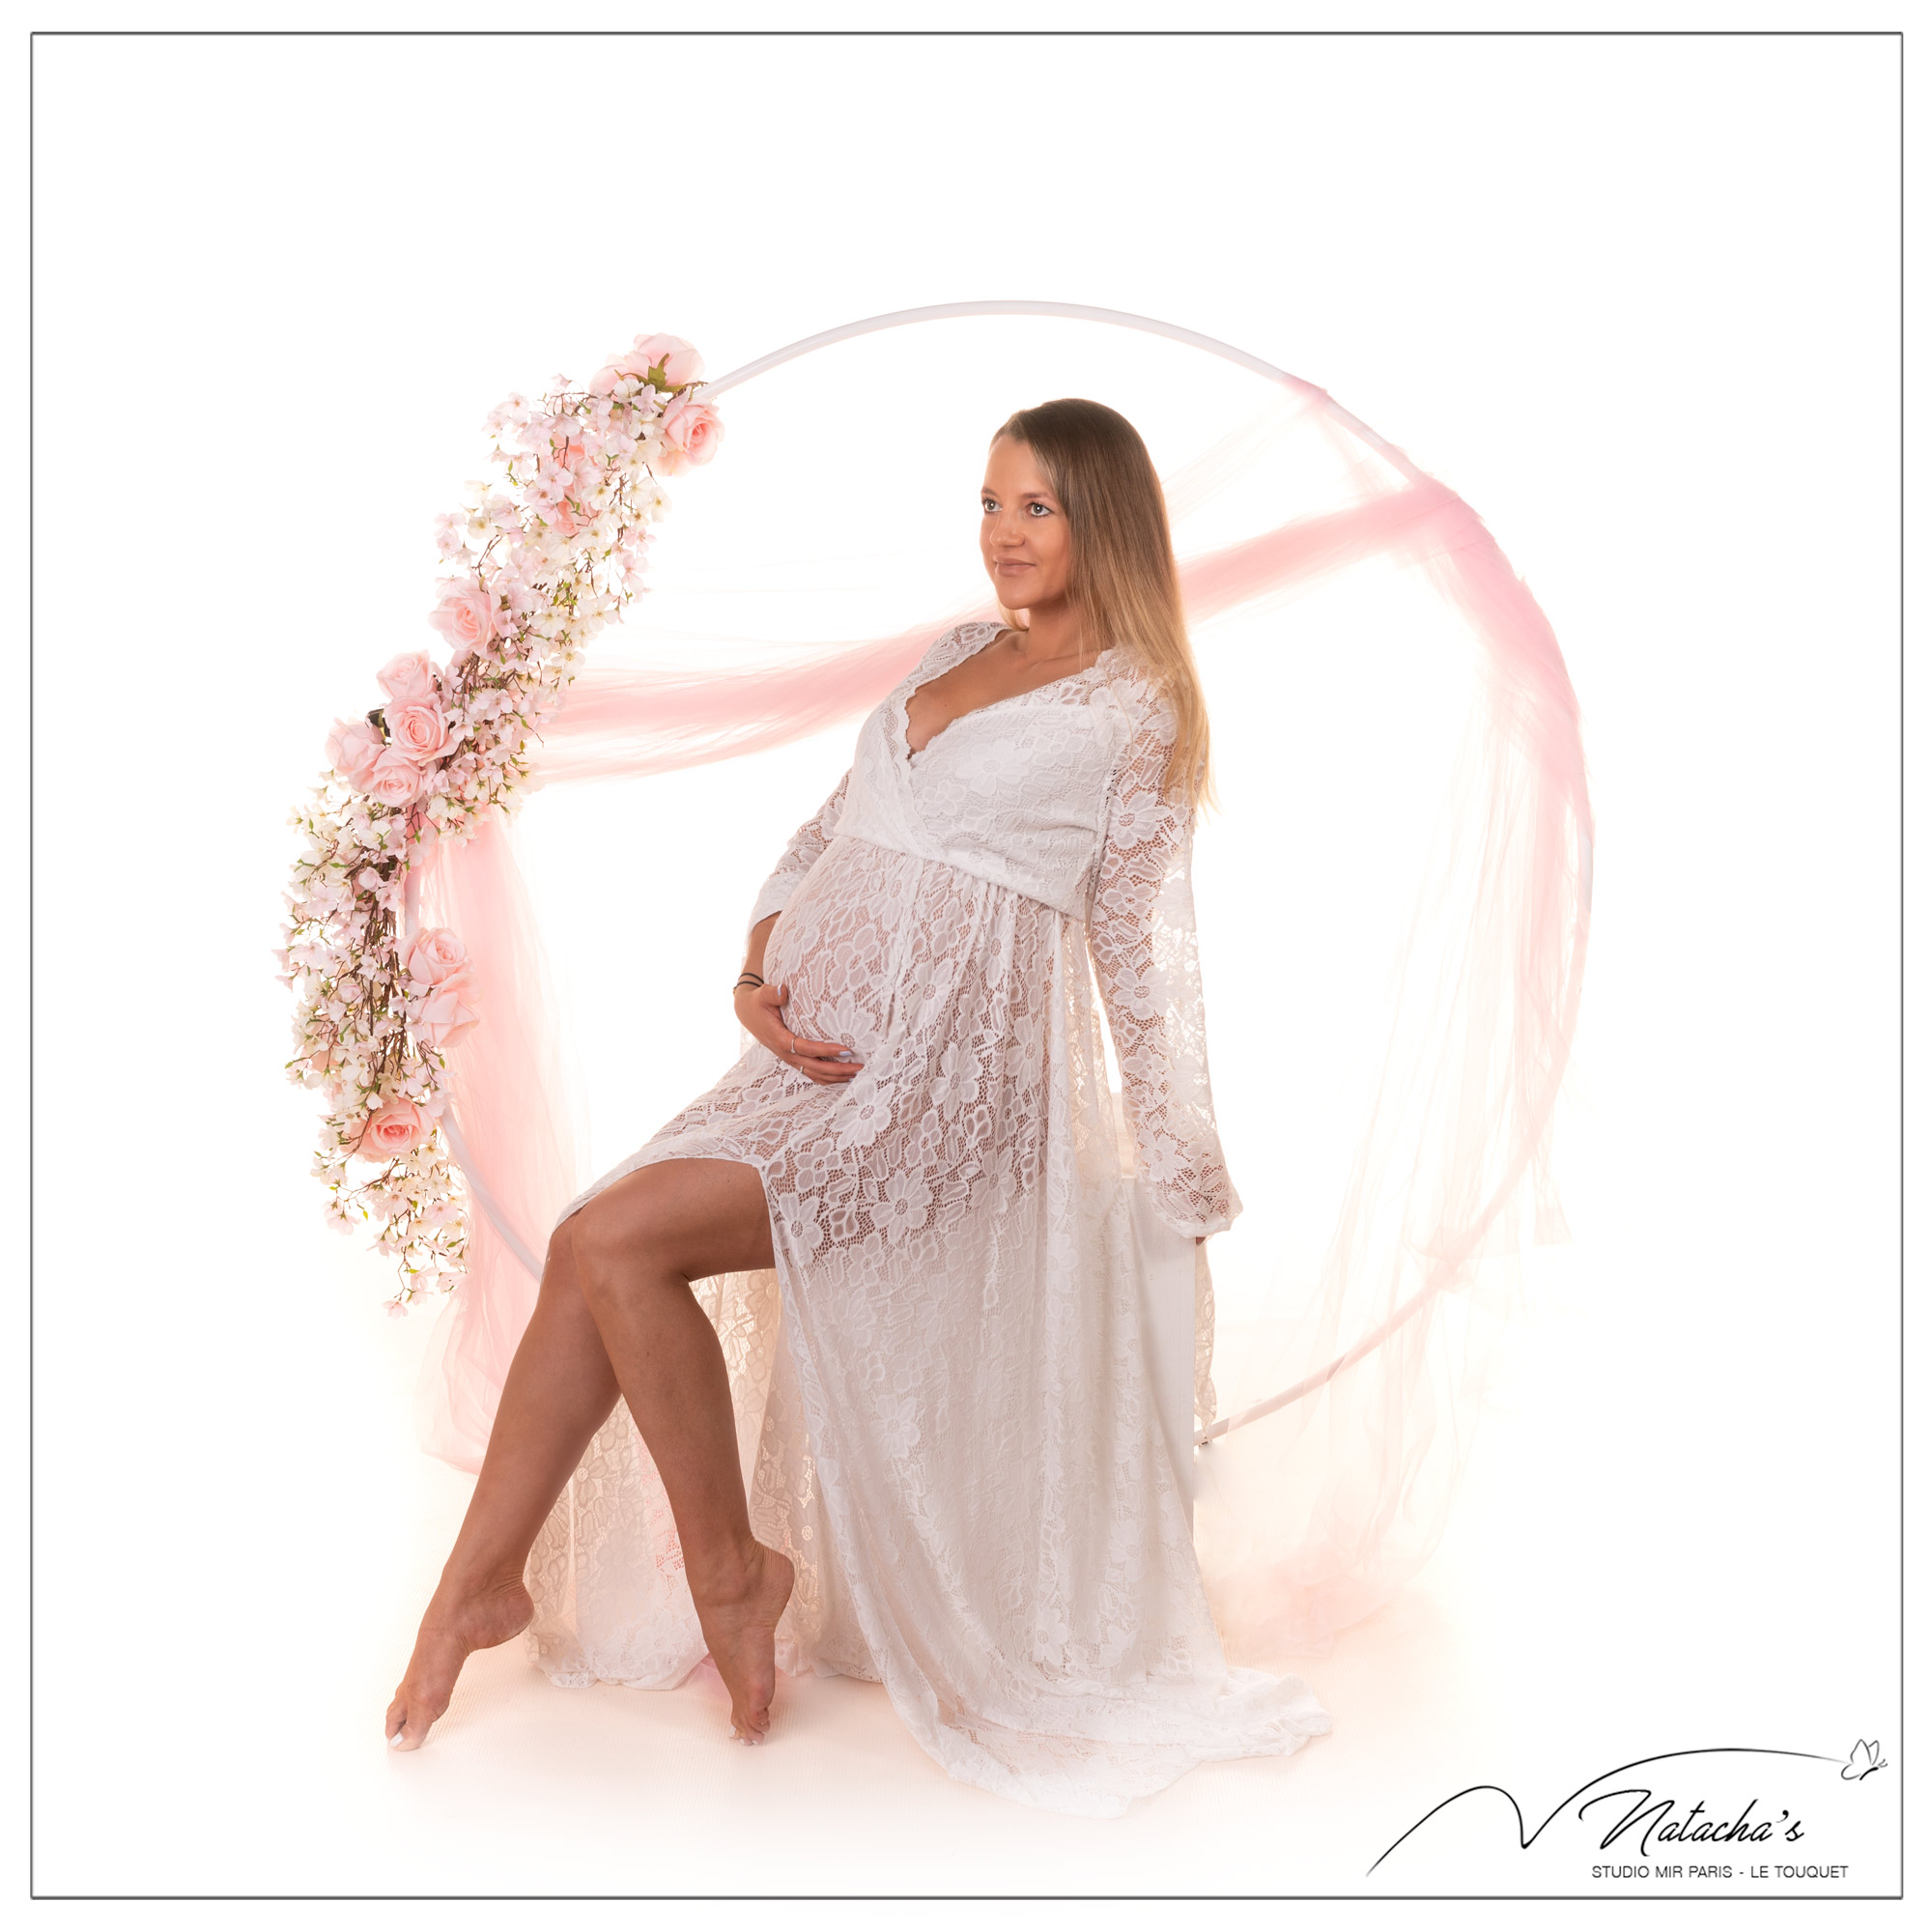 Photographe grossesse : séance photo future maman avec voilage dans le 94